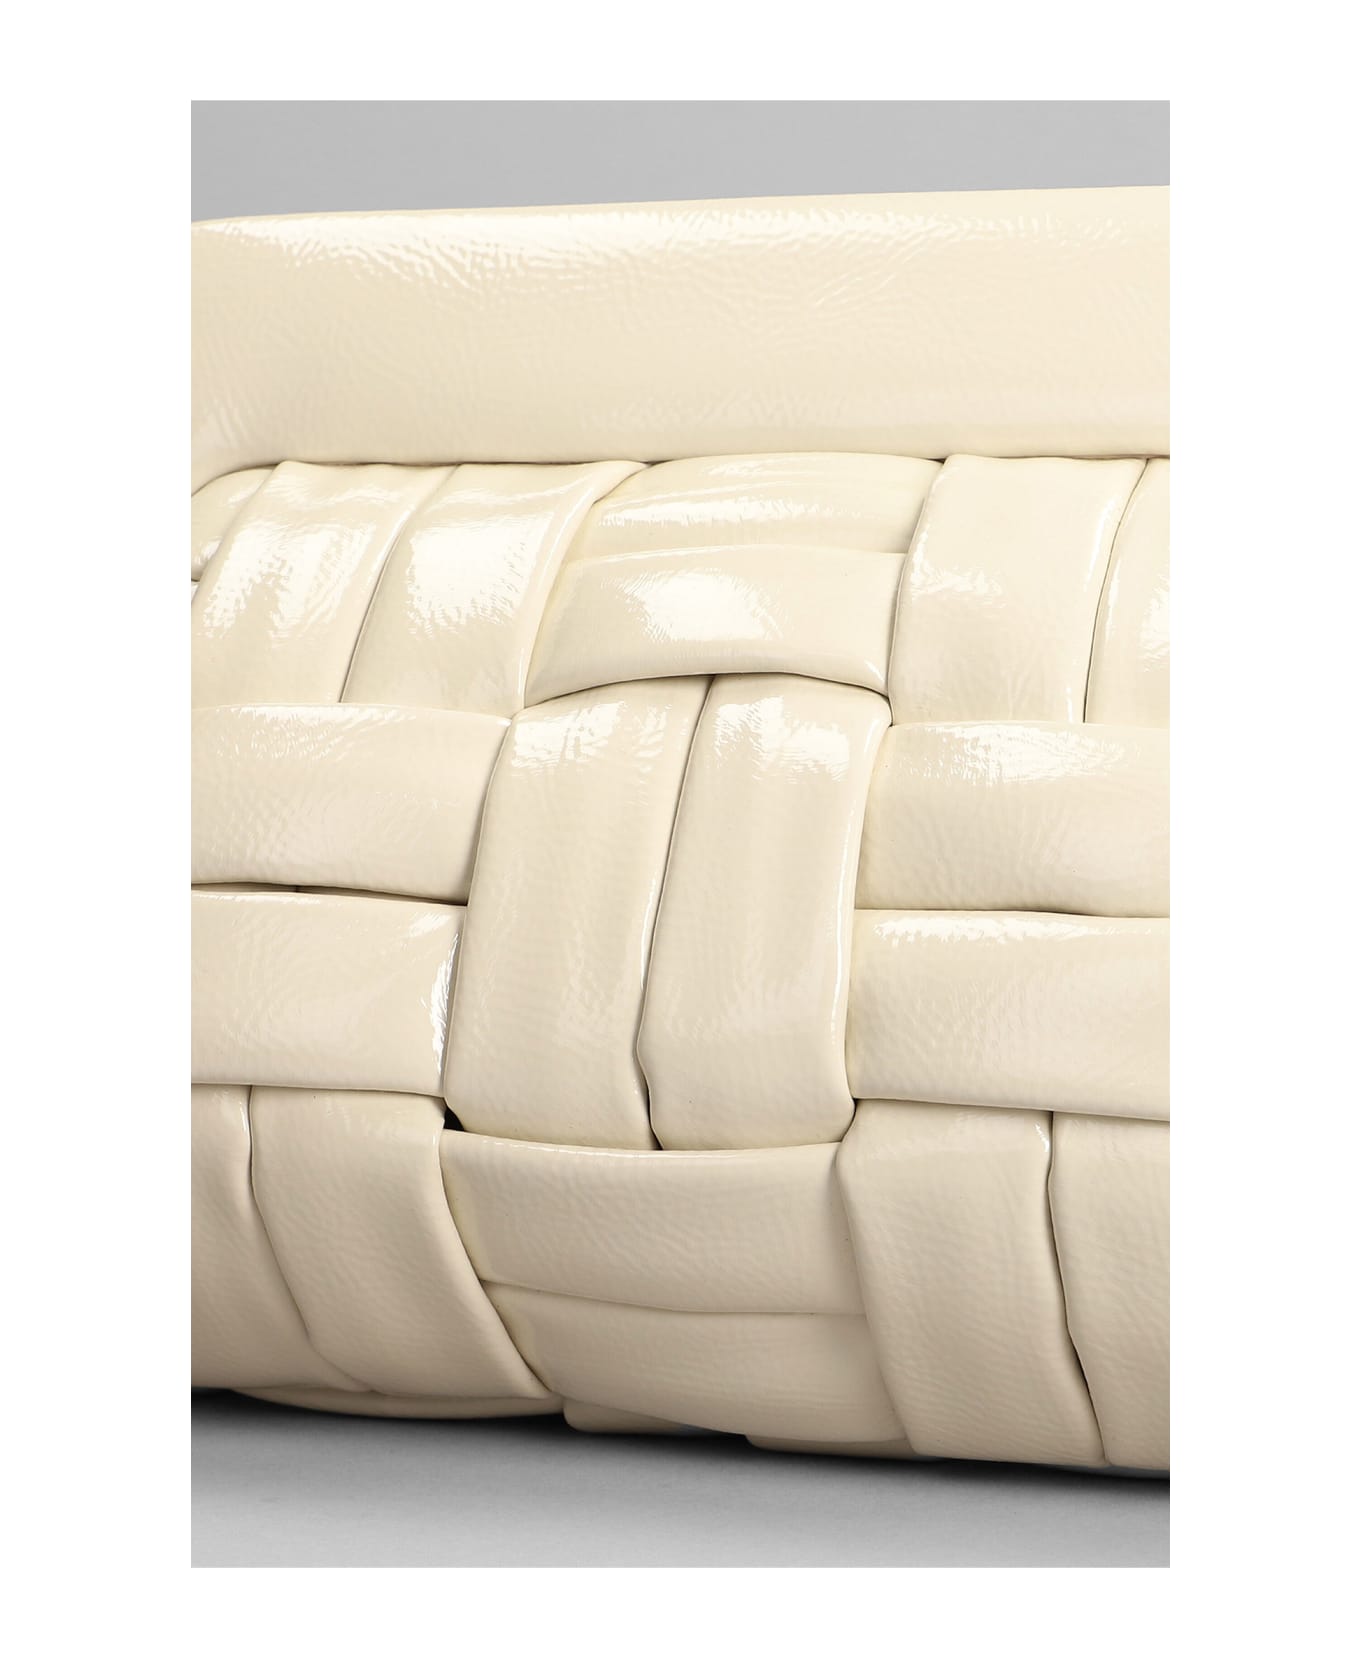 THEMOIRè Bios Weaved Clutch In Beige Faux Leather - beige